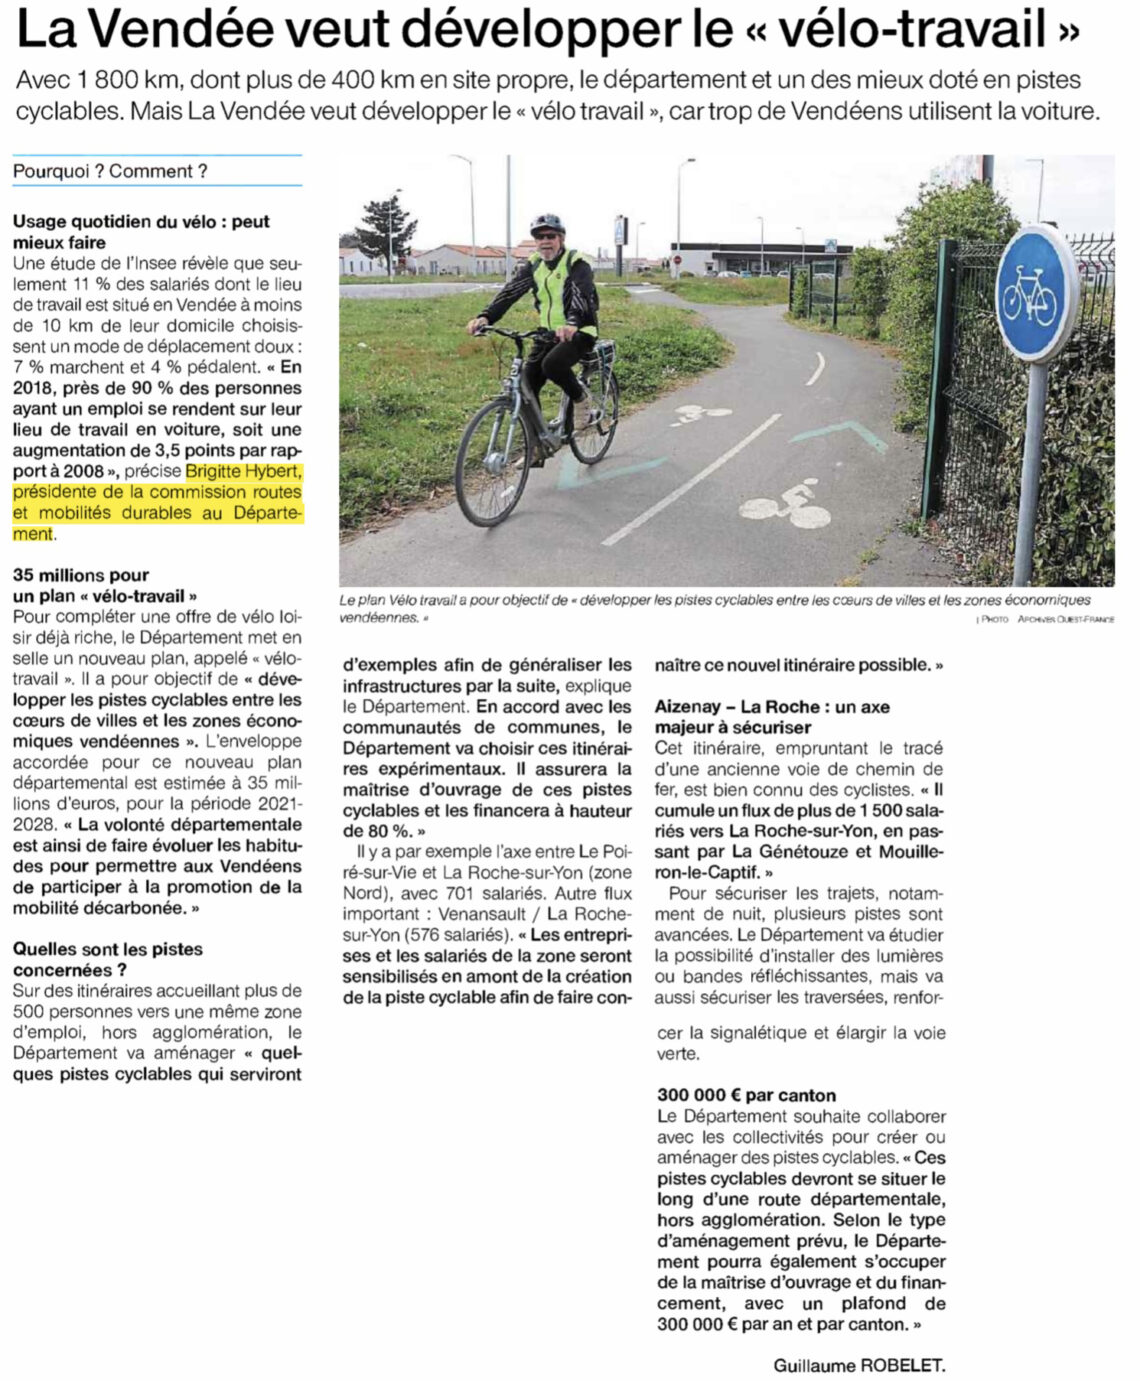 La Vendée veut développer le vélo-travail